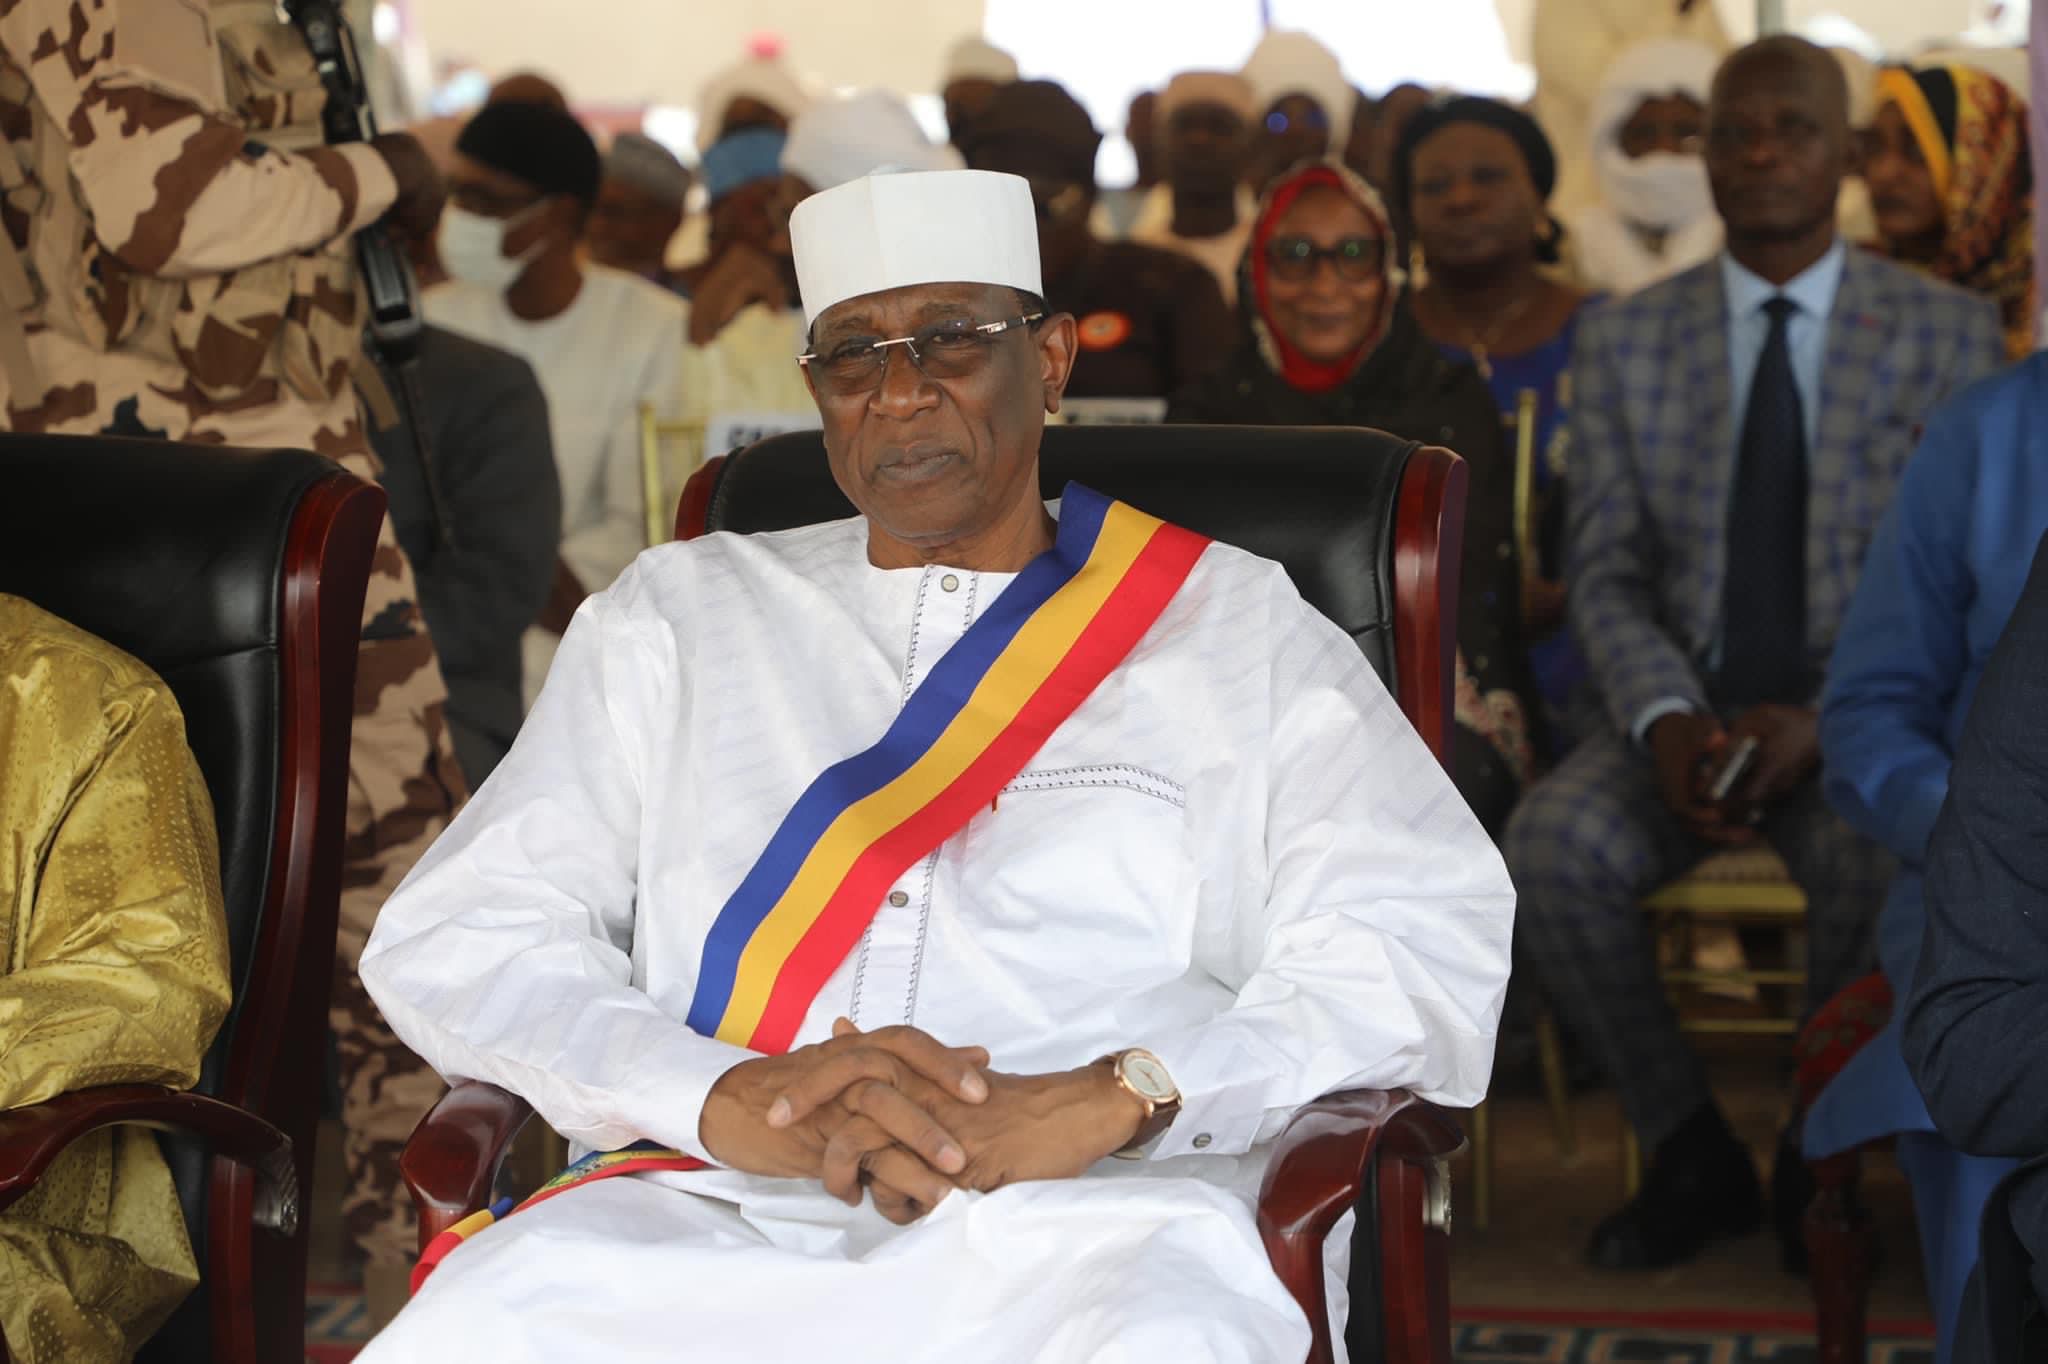 Tchad : le maire de N’Djamena appelle ses concitoyens à un élan de solidarité